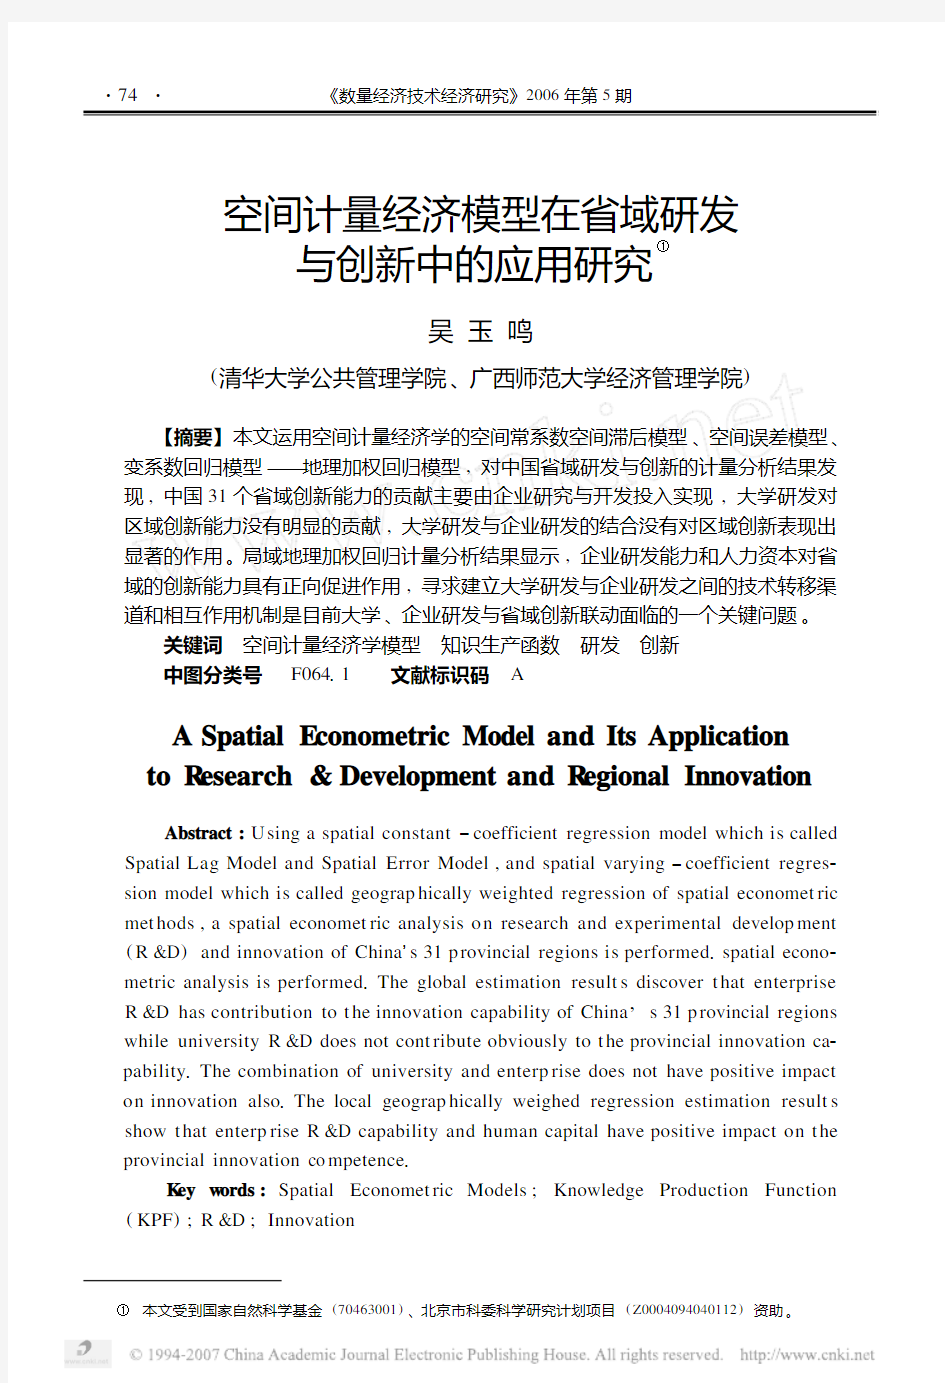 空间计量经济模型在省域研发与创新中的应用研究——吴玉鸣——模板